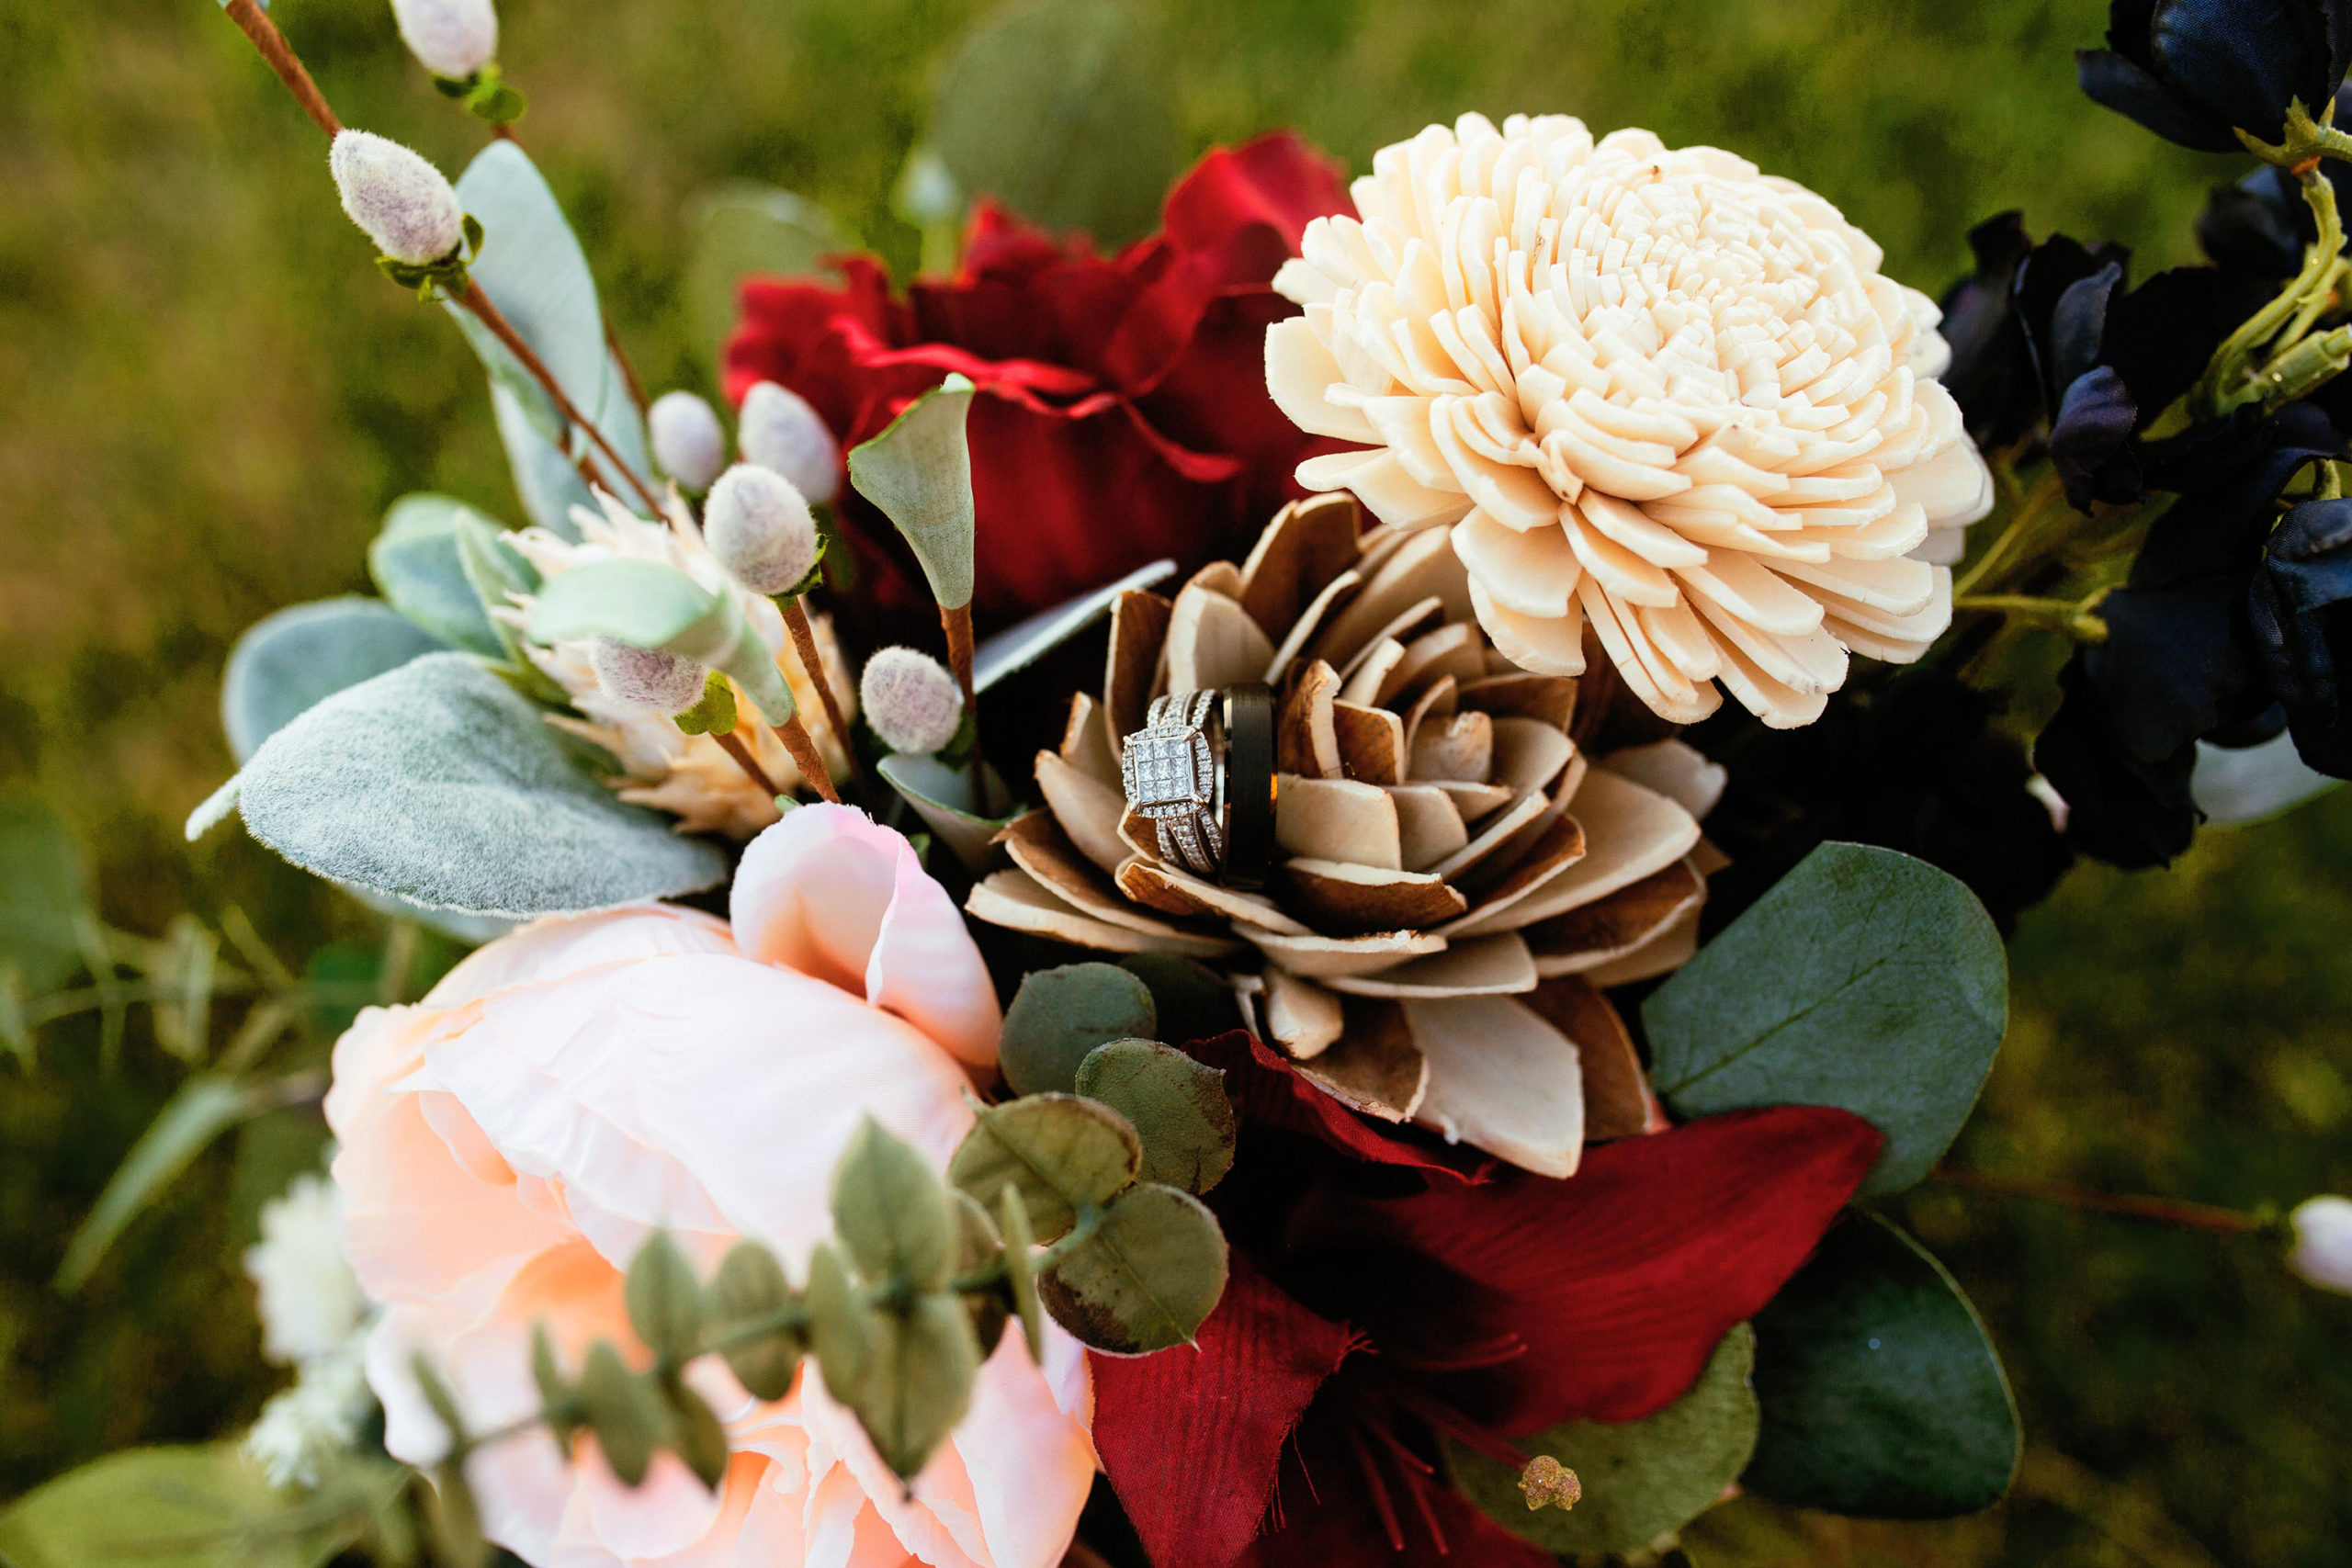 Wedding ring hidden in flowers